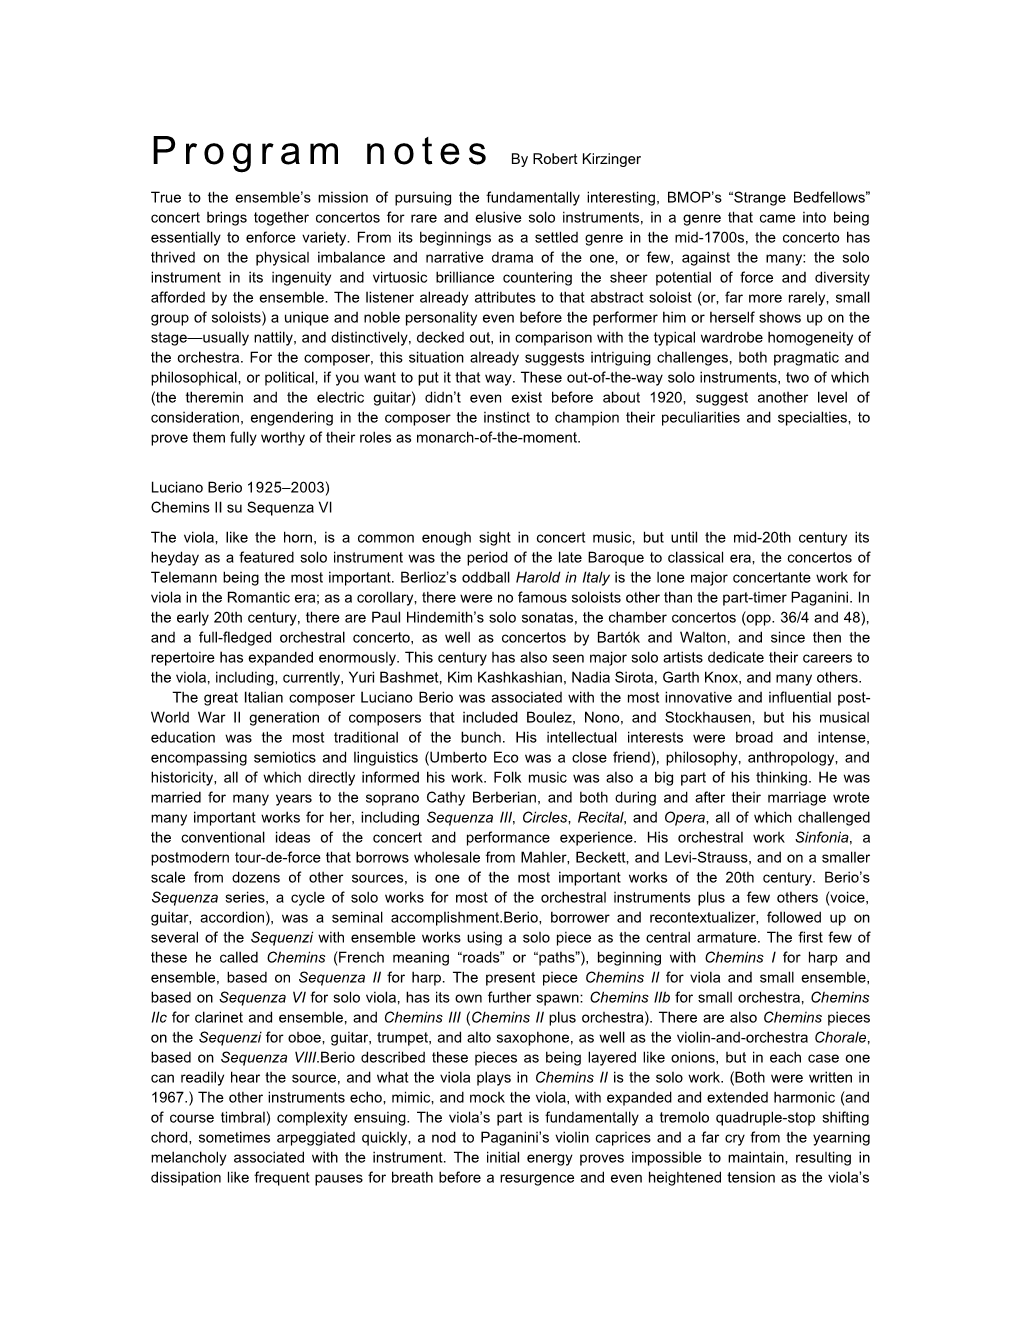 Program Notes by Robert Kirzinger